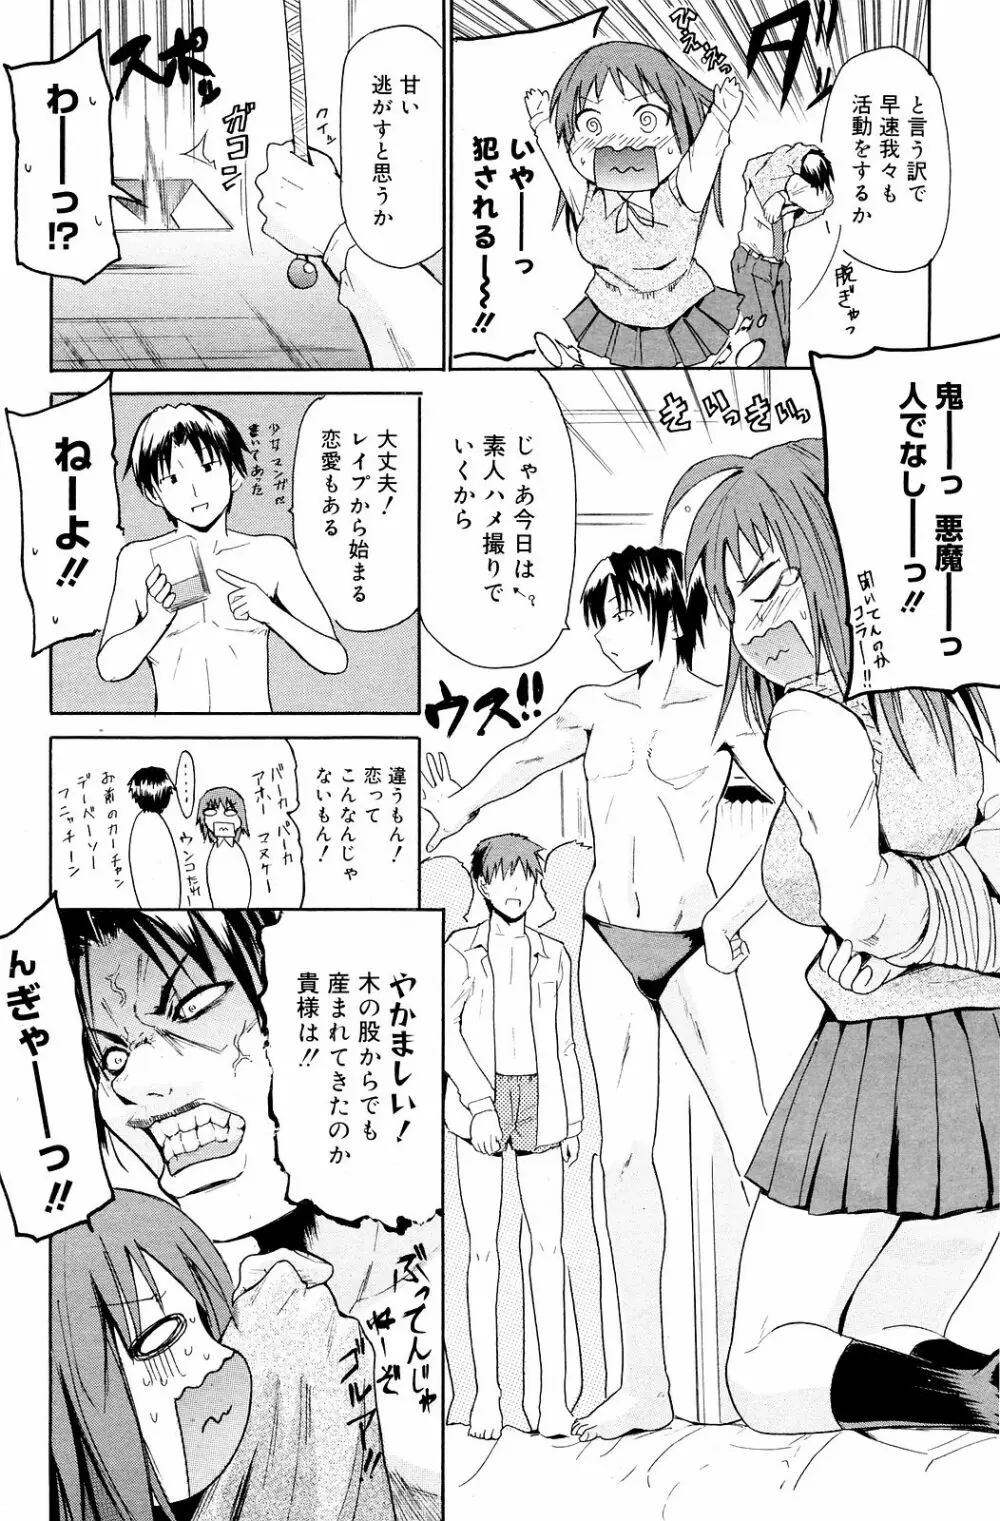 Manga Bangaichi 2008-12 156ページ